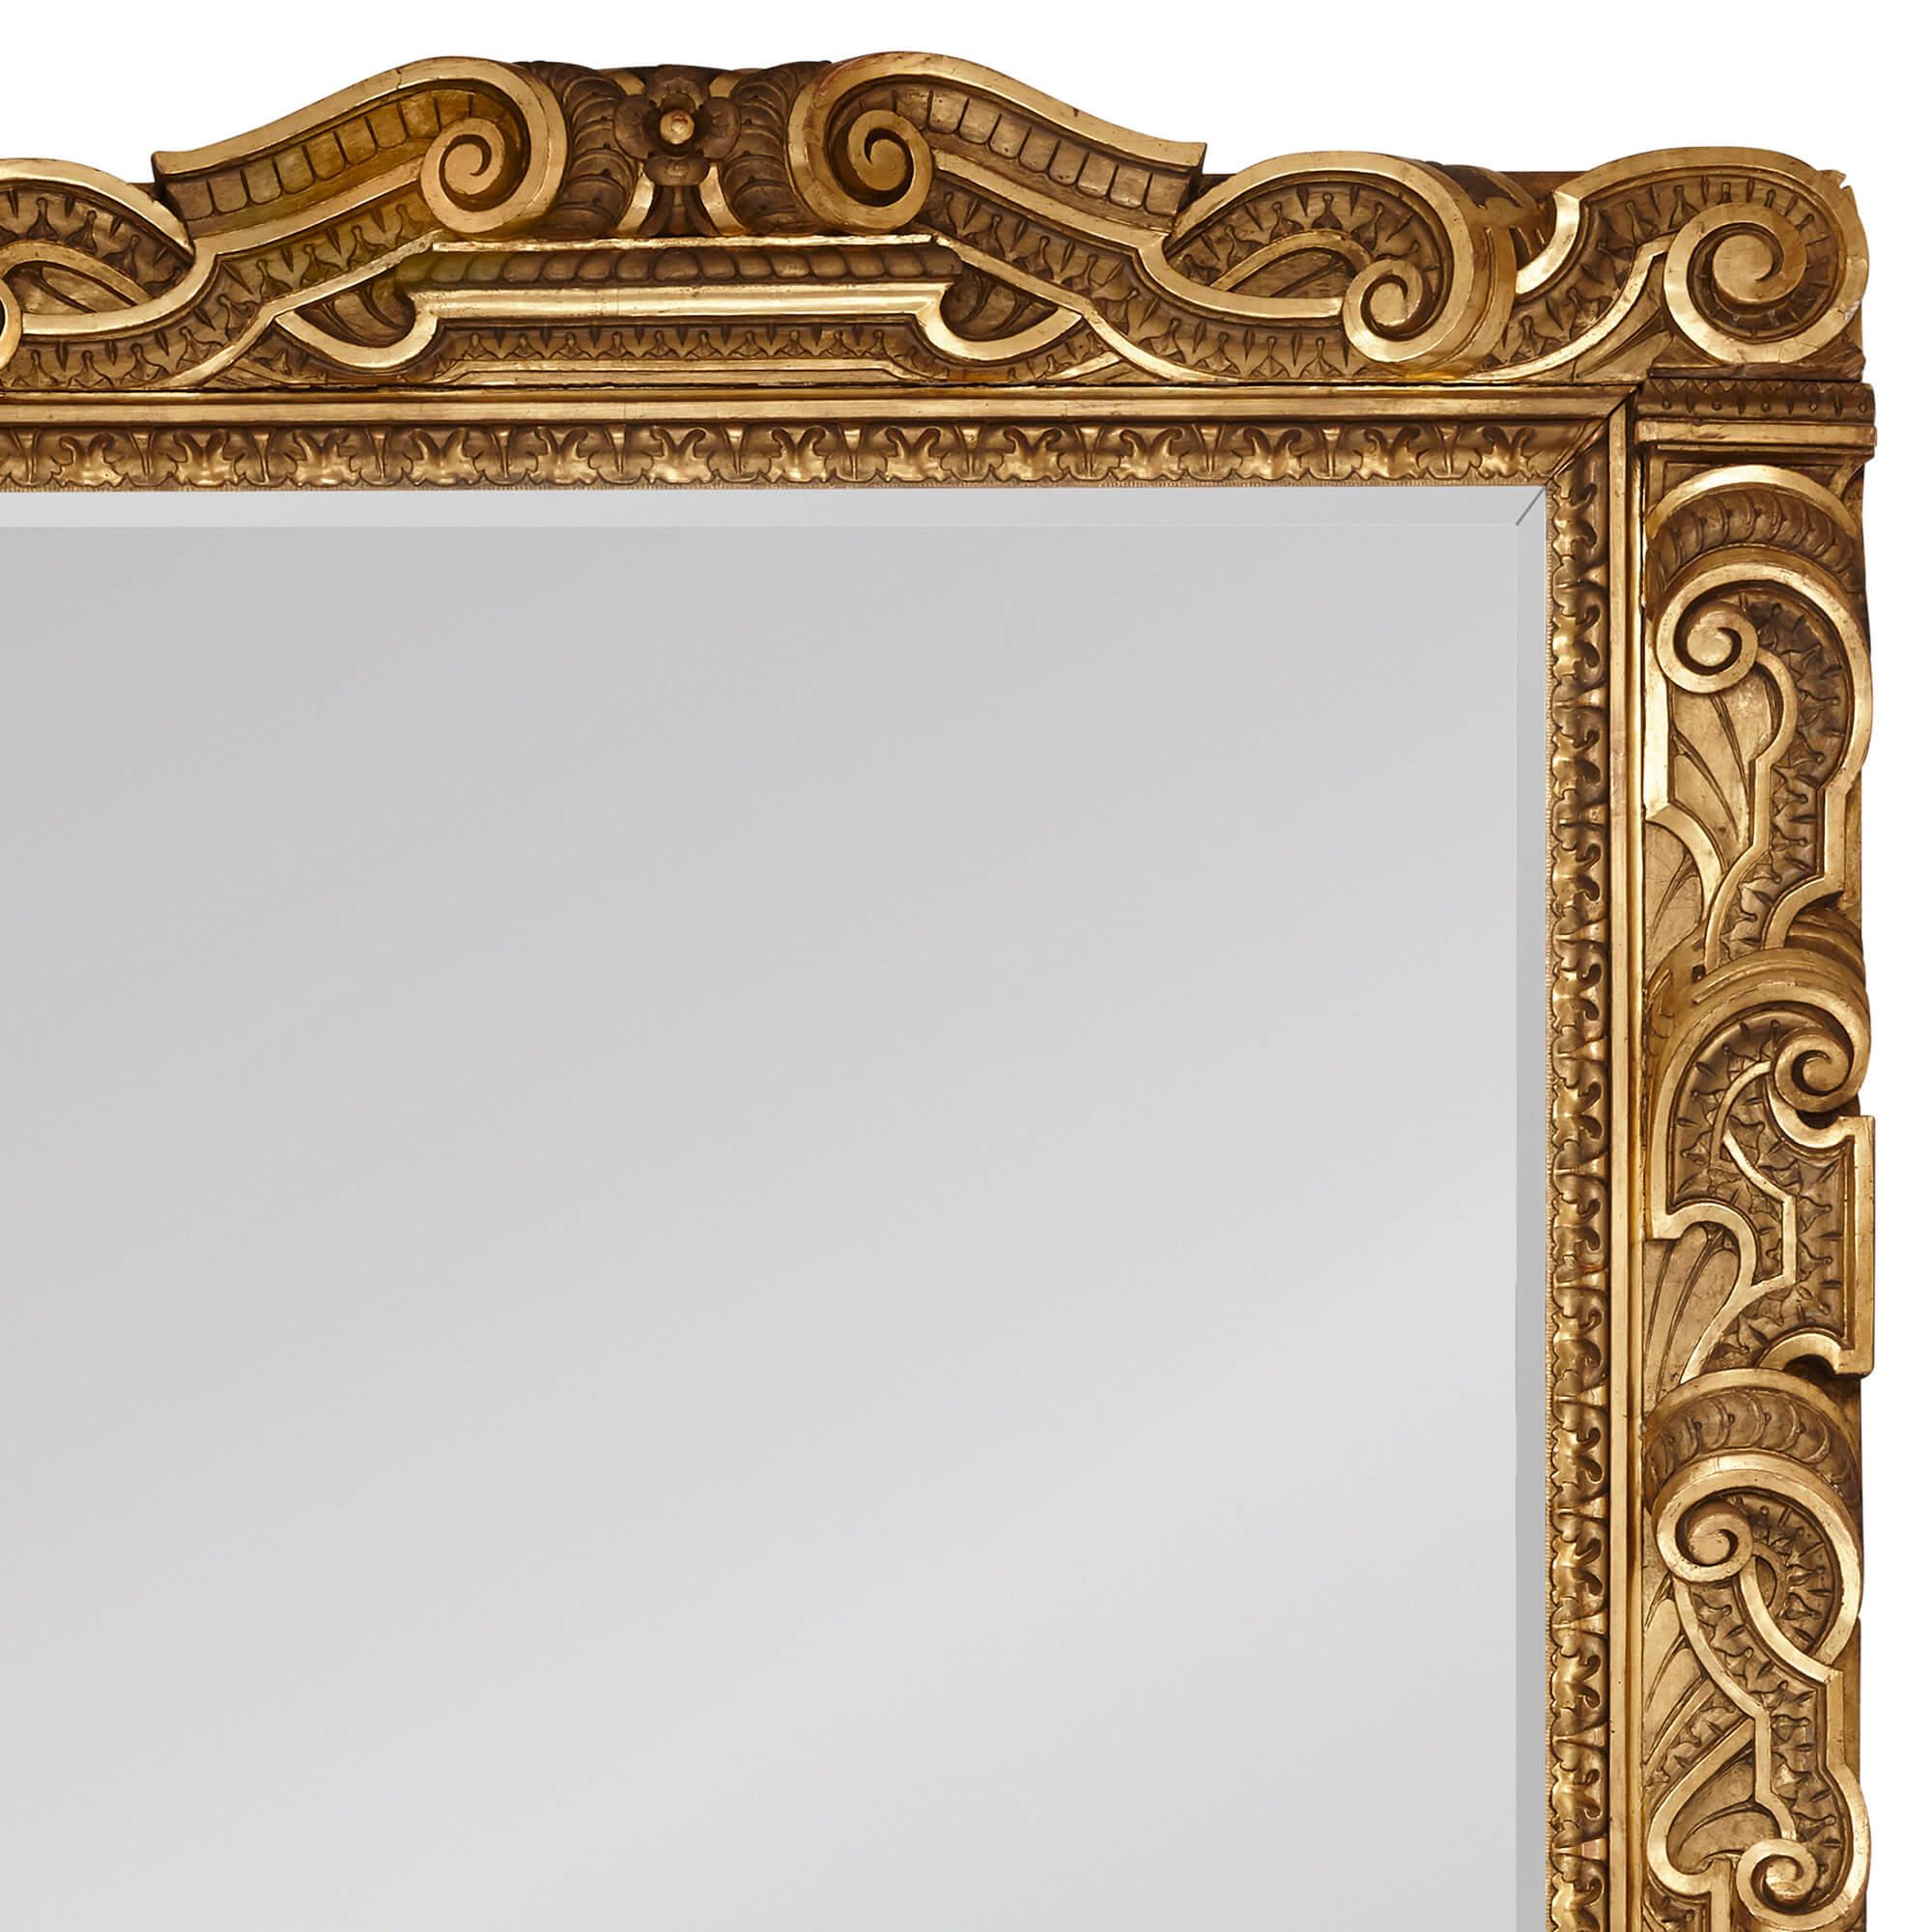 Großer italienischer vergoldeter Holzspiegel im Barockstil geschnitzt
Italienisch, 19. Jahrhundert
Höhe 254cm, Breite 168cm, Tiefe 11cm

Dieser sehr große Wandspiegel aus vergoldetem Holz ist im italienischen Barockstil gehalten. Der Spiegel hat